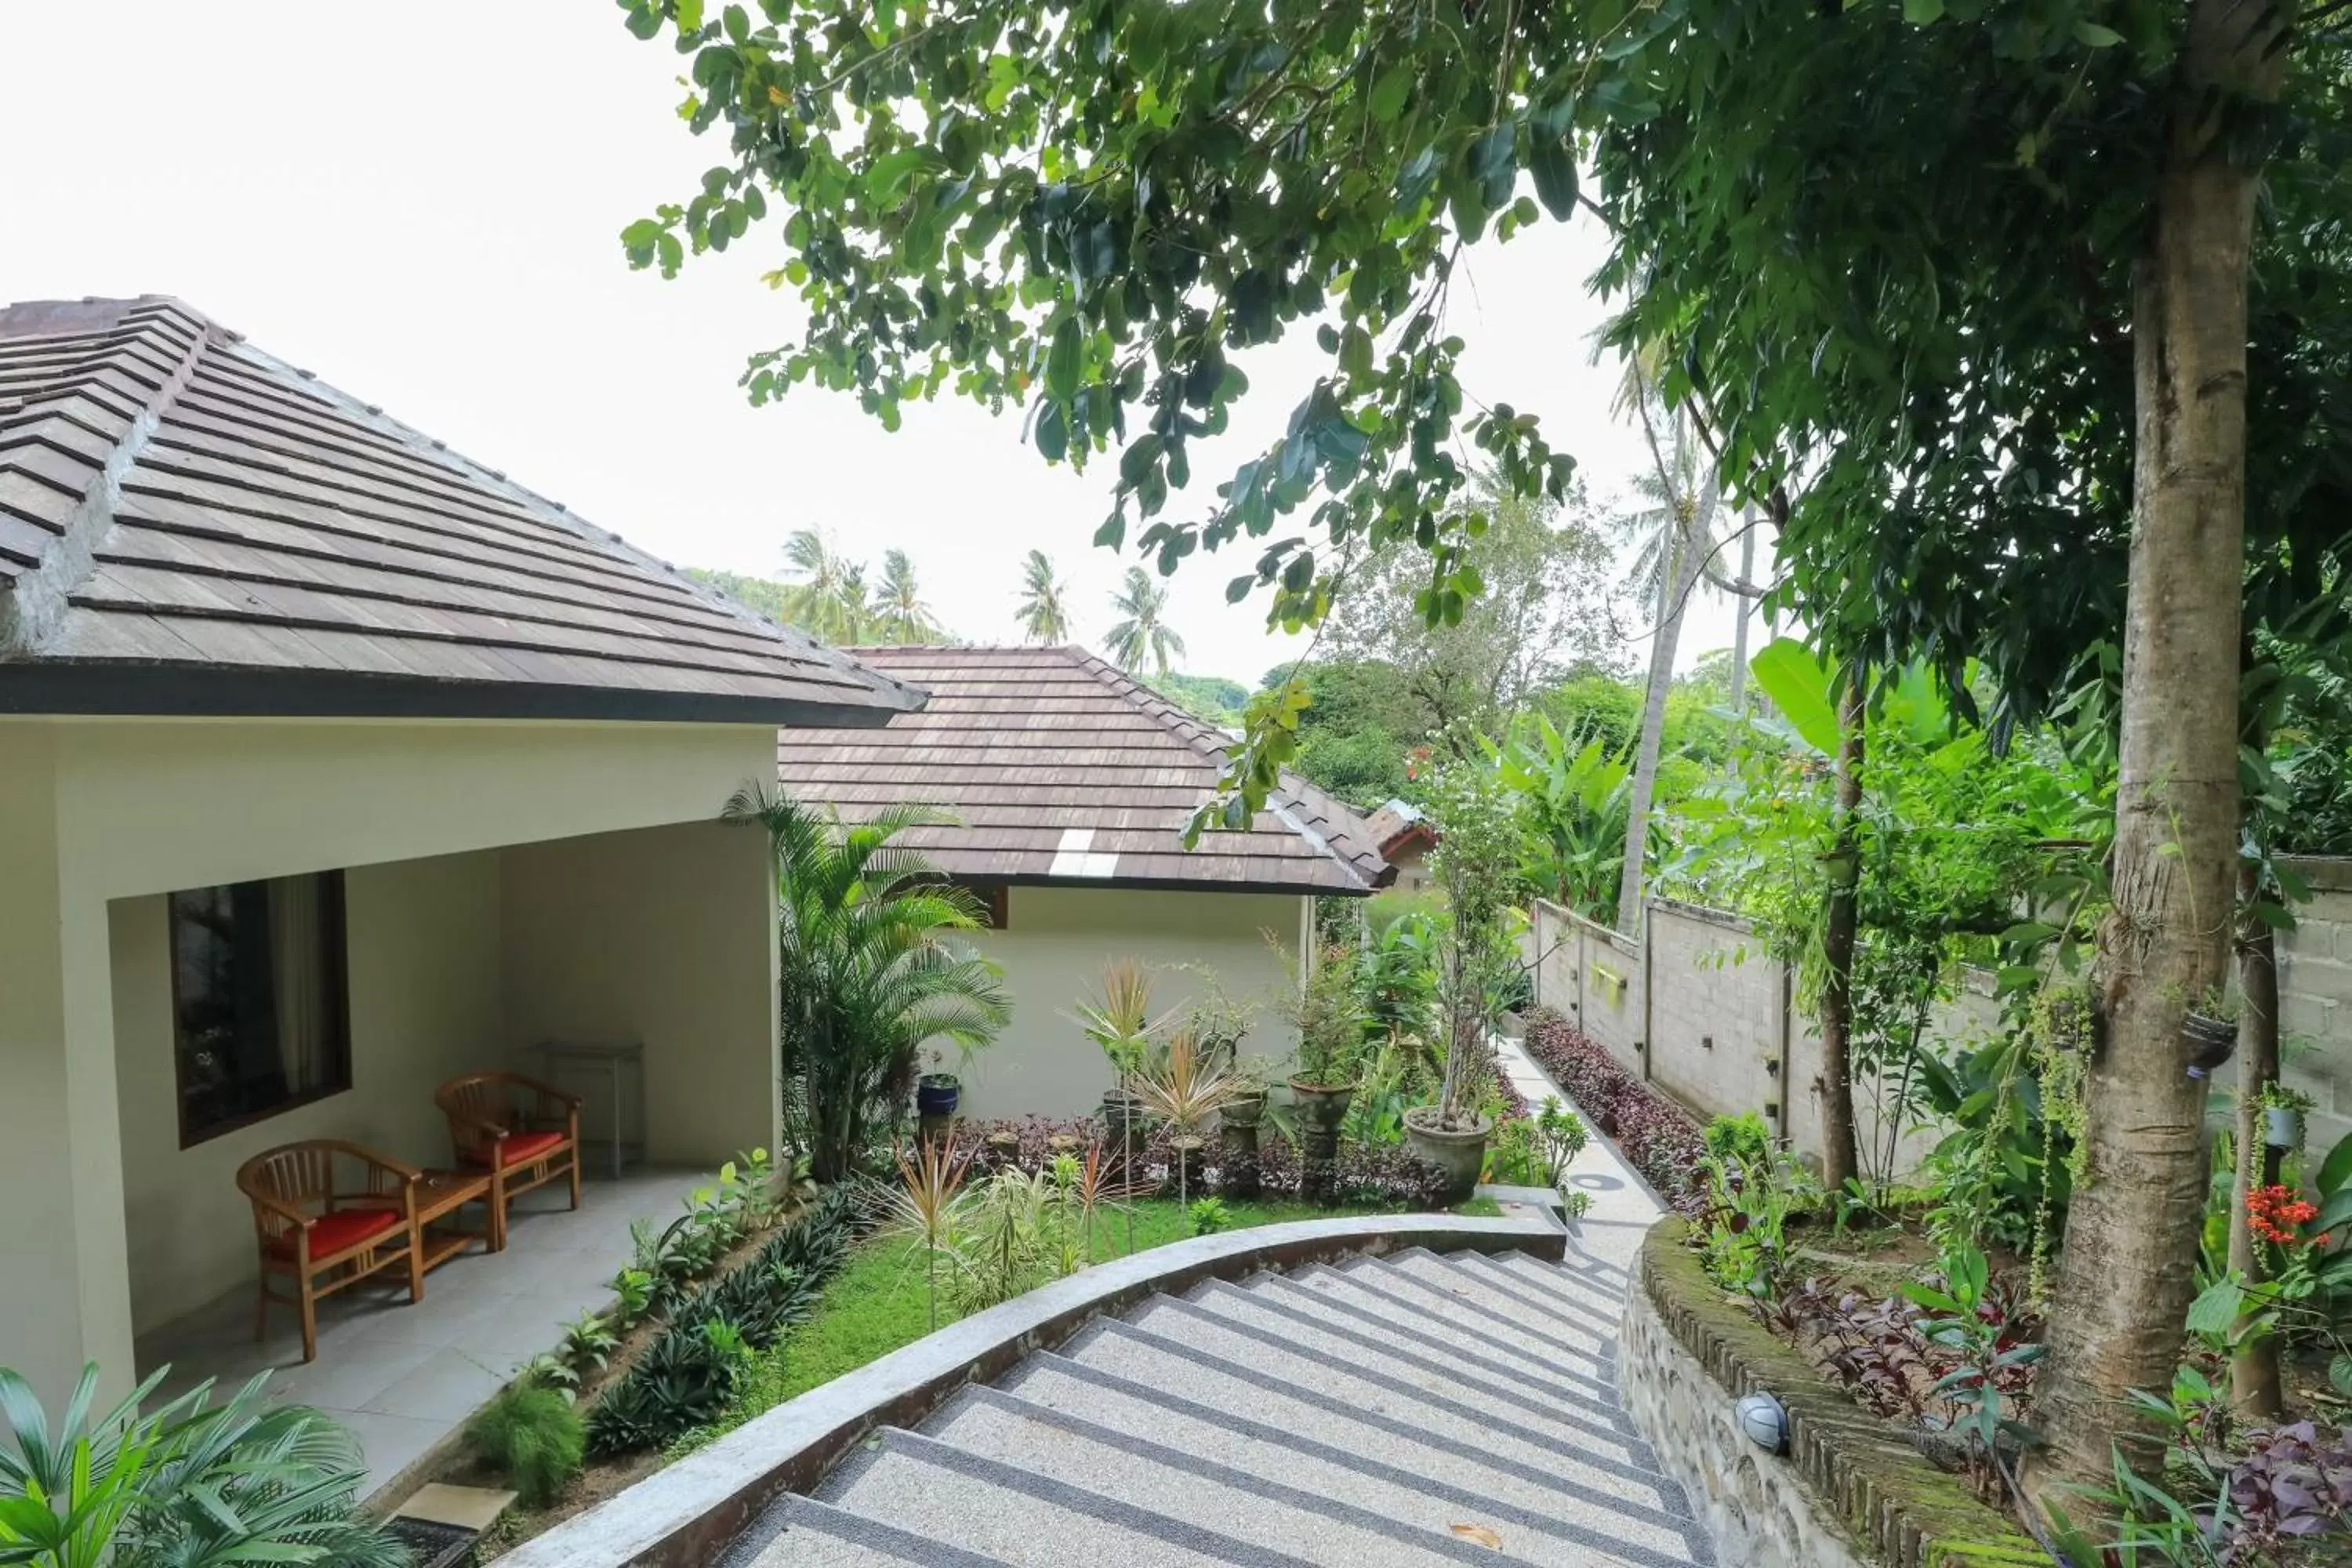 Property building in Senggigi Cottages Lombok